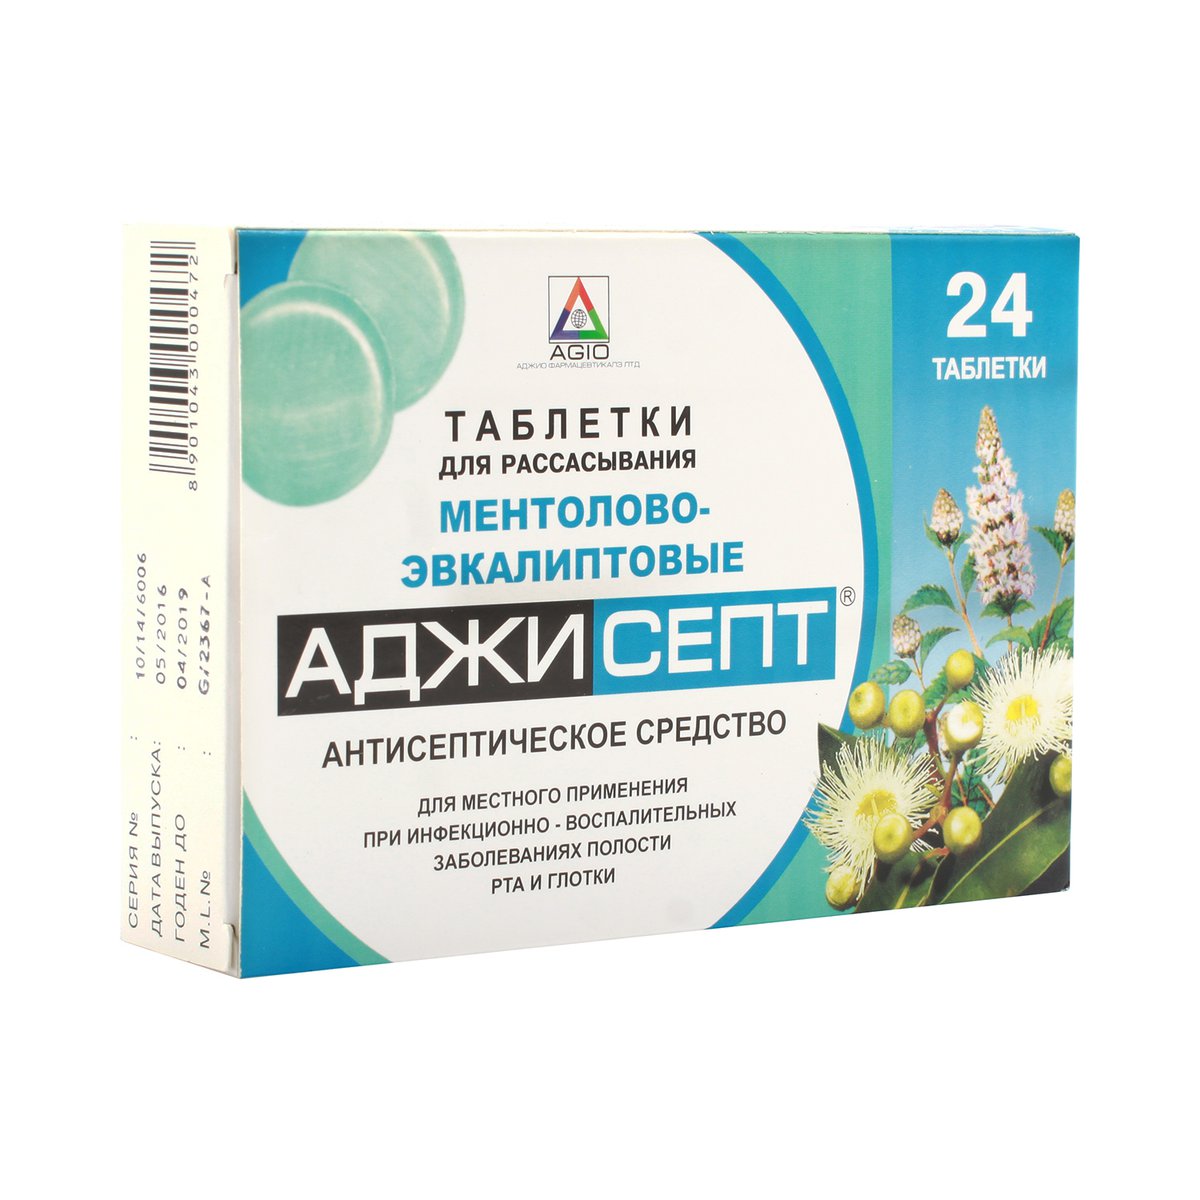 Аджисепт (таблетки, 24 шт, для рассасывания, ментол-эвкалипт) - цена .